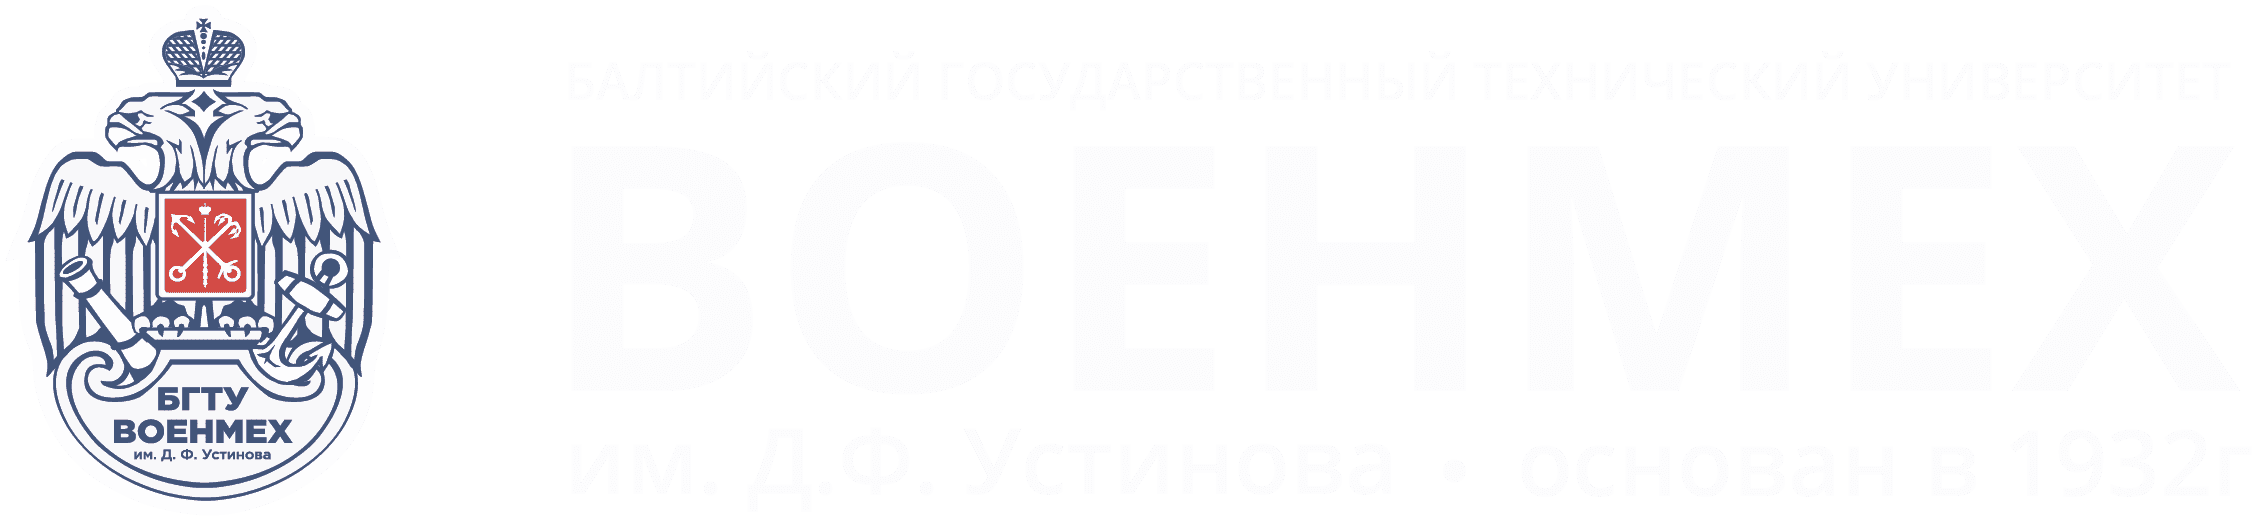 БГТУ «ВОЕНМЕХ» им. Д.Ф. Устинова